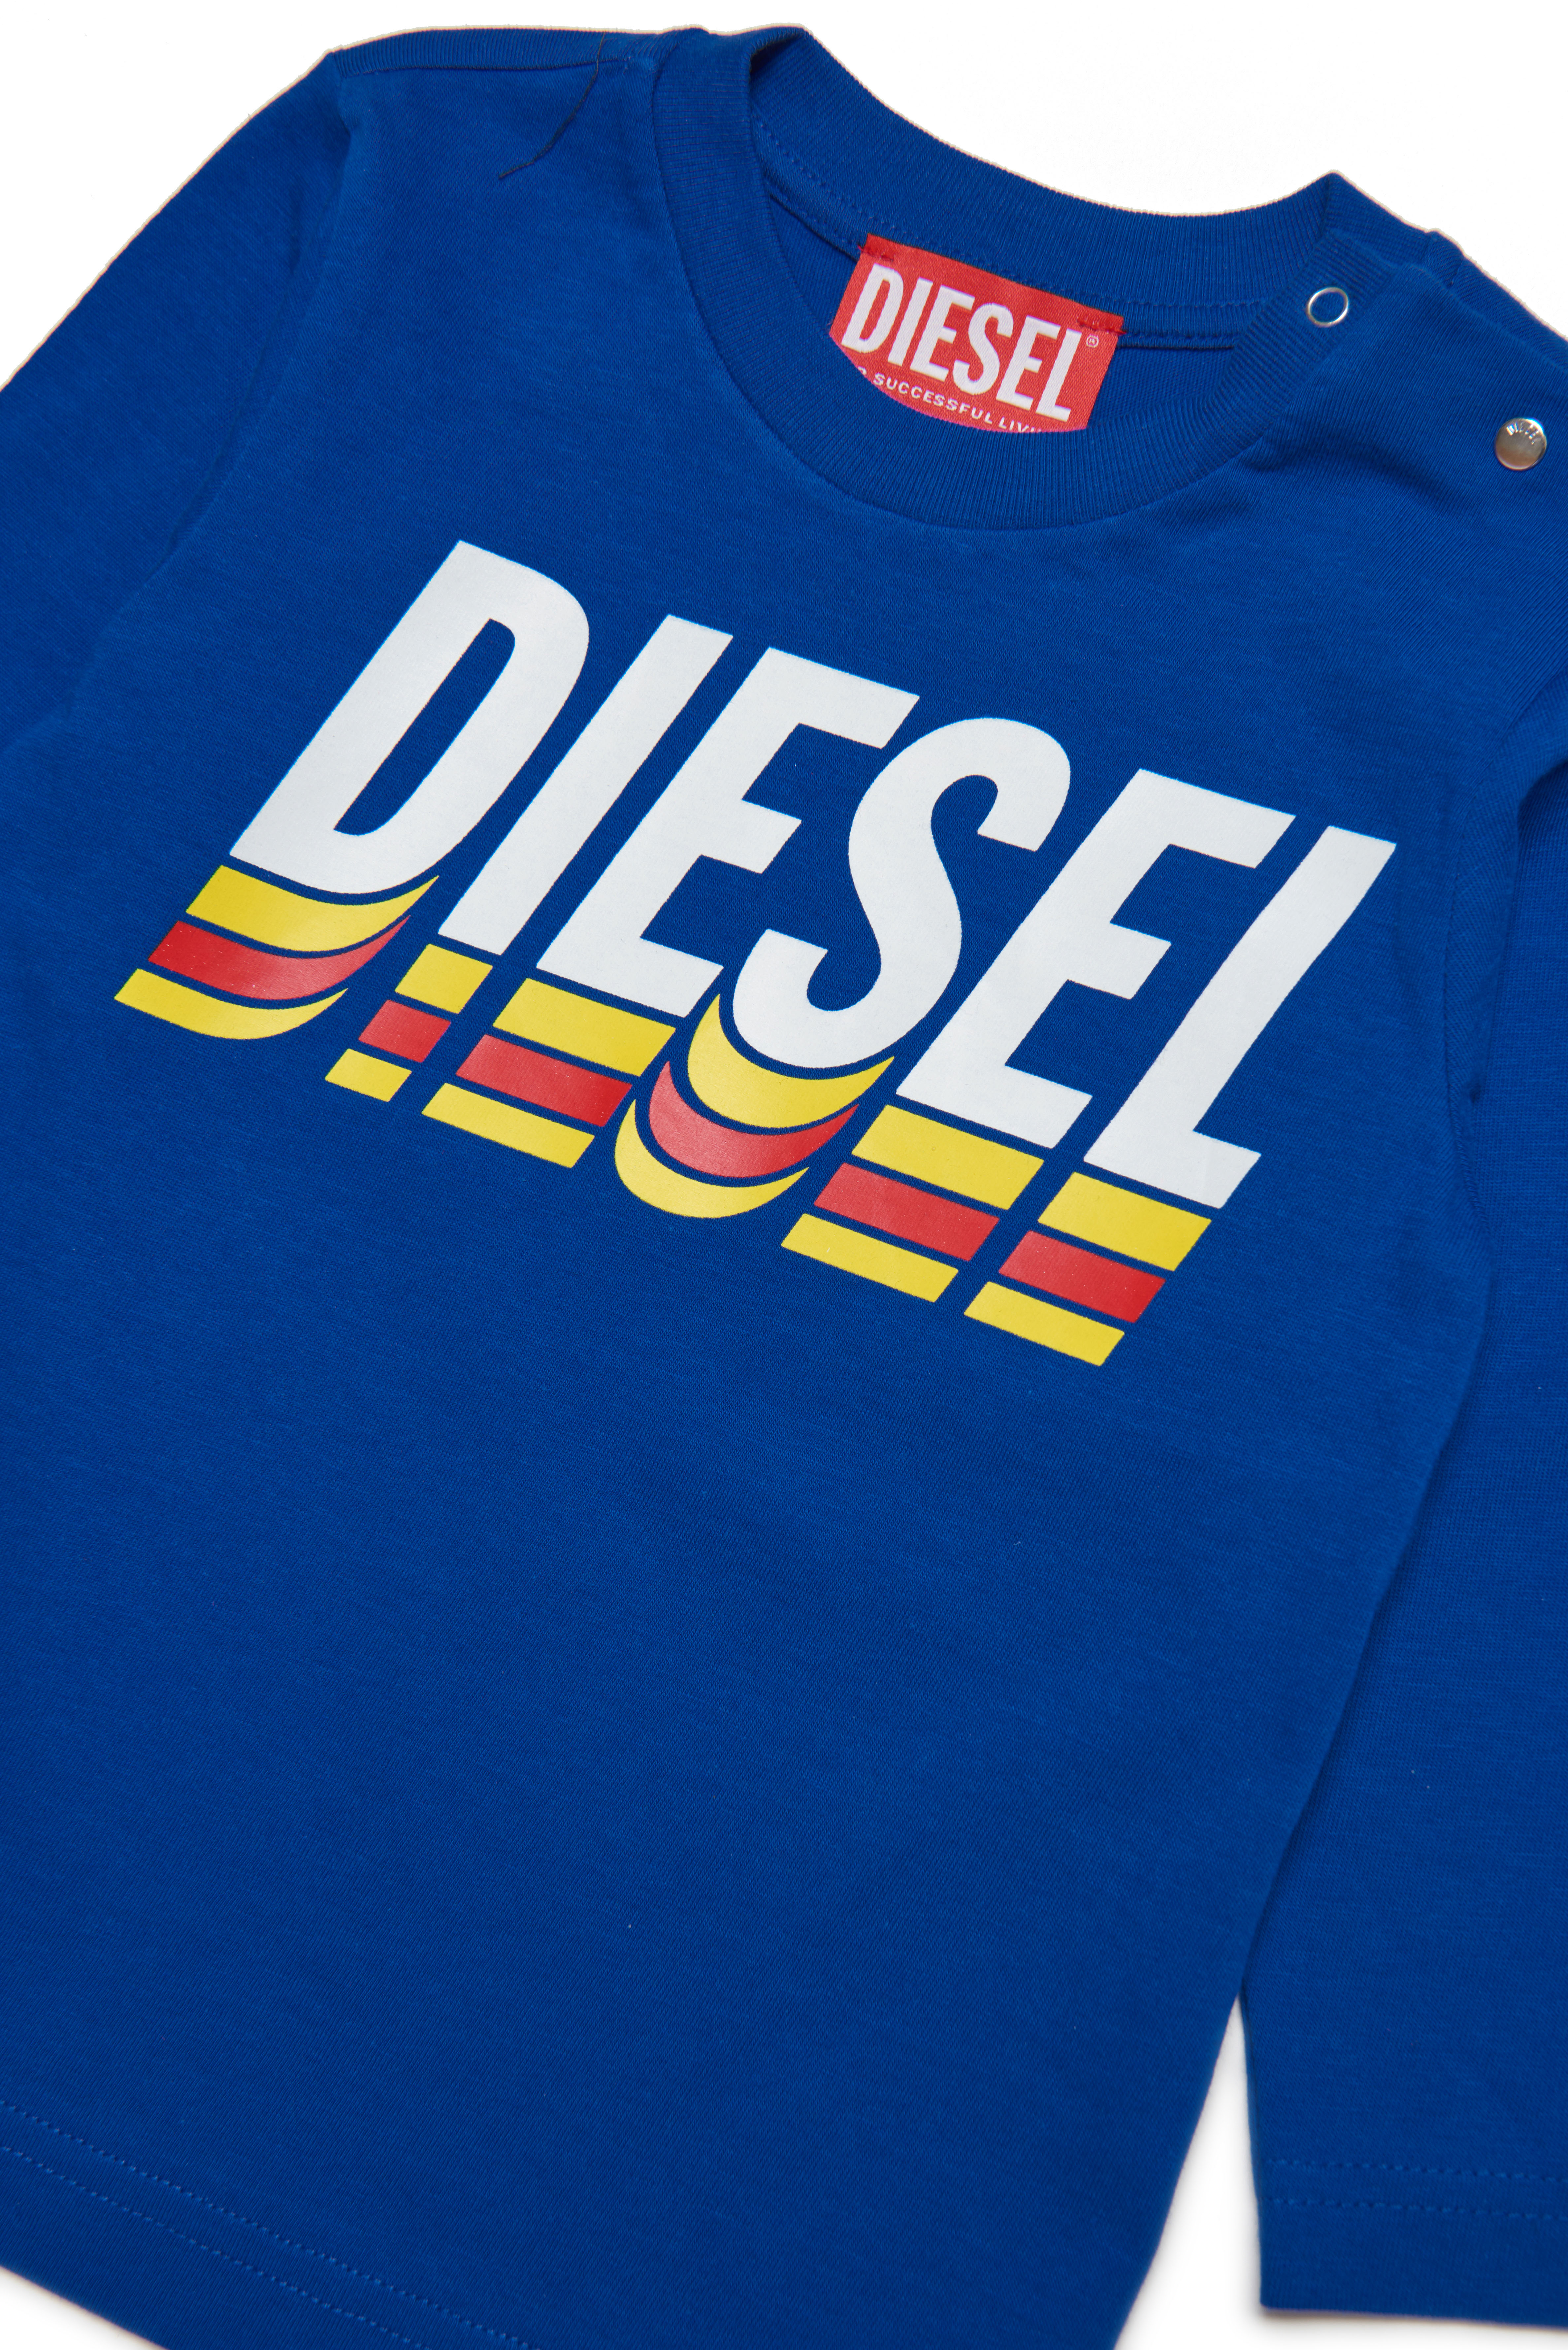 Diesel - TVASELSB, Azul - Image 3